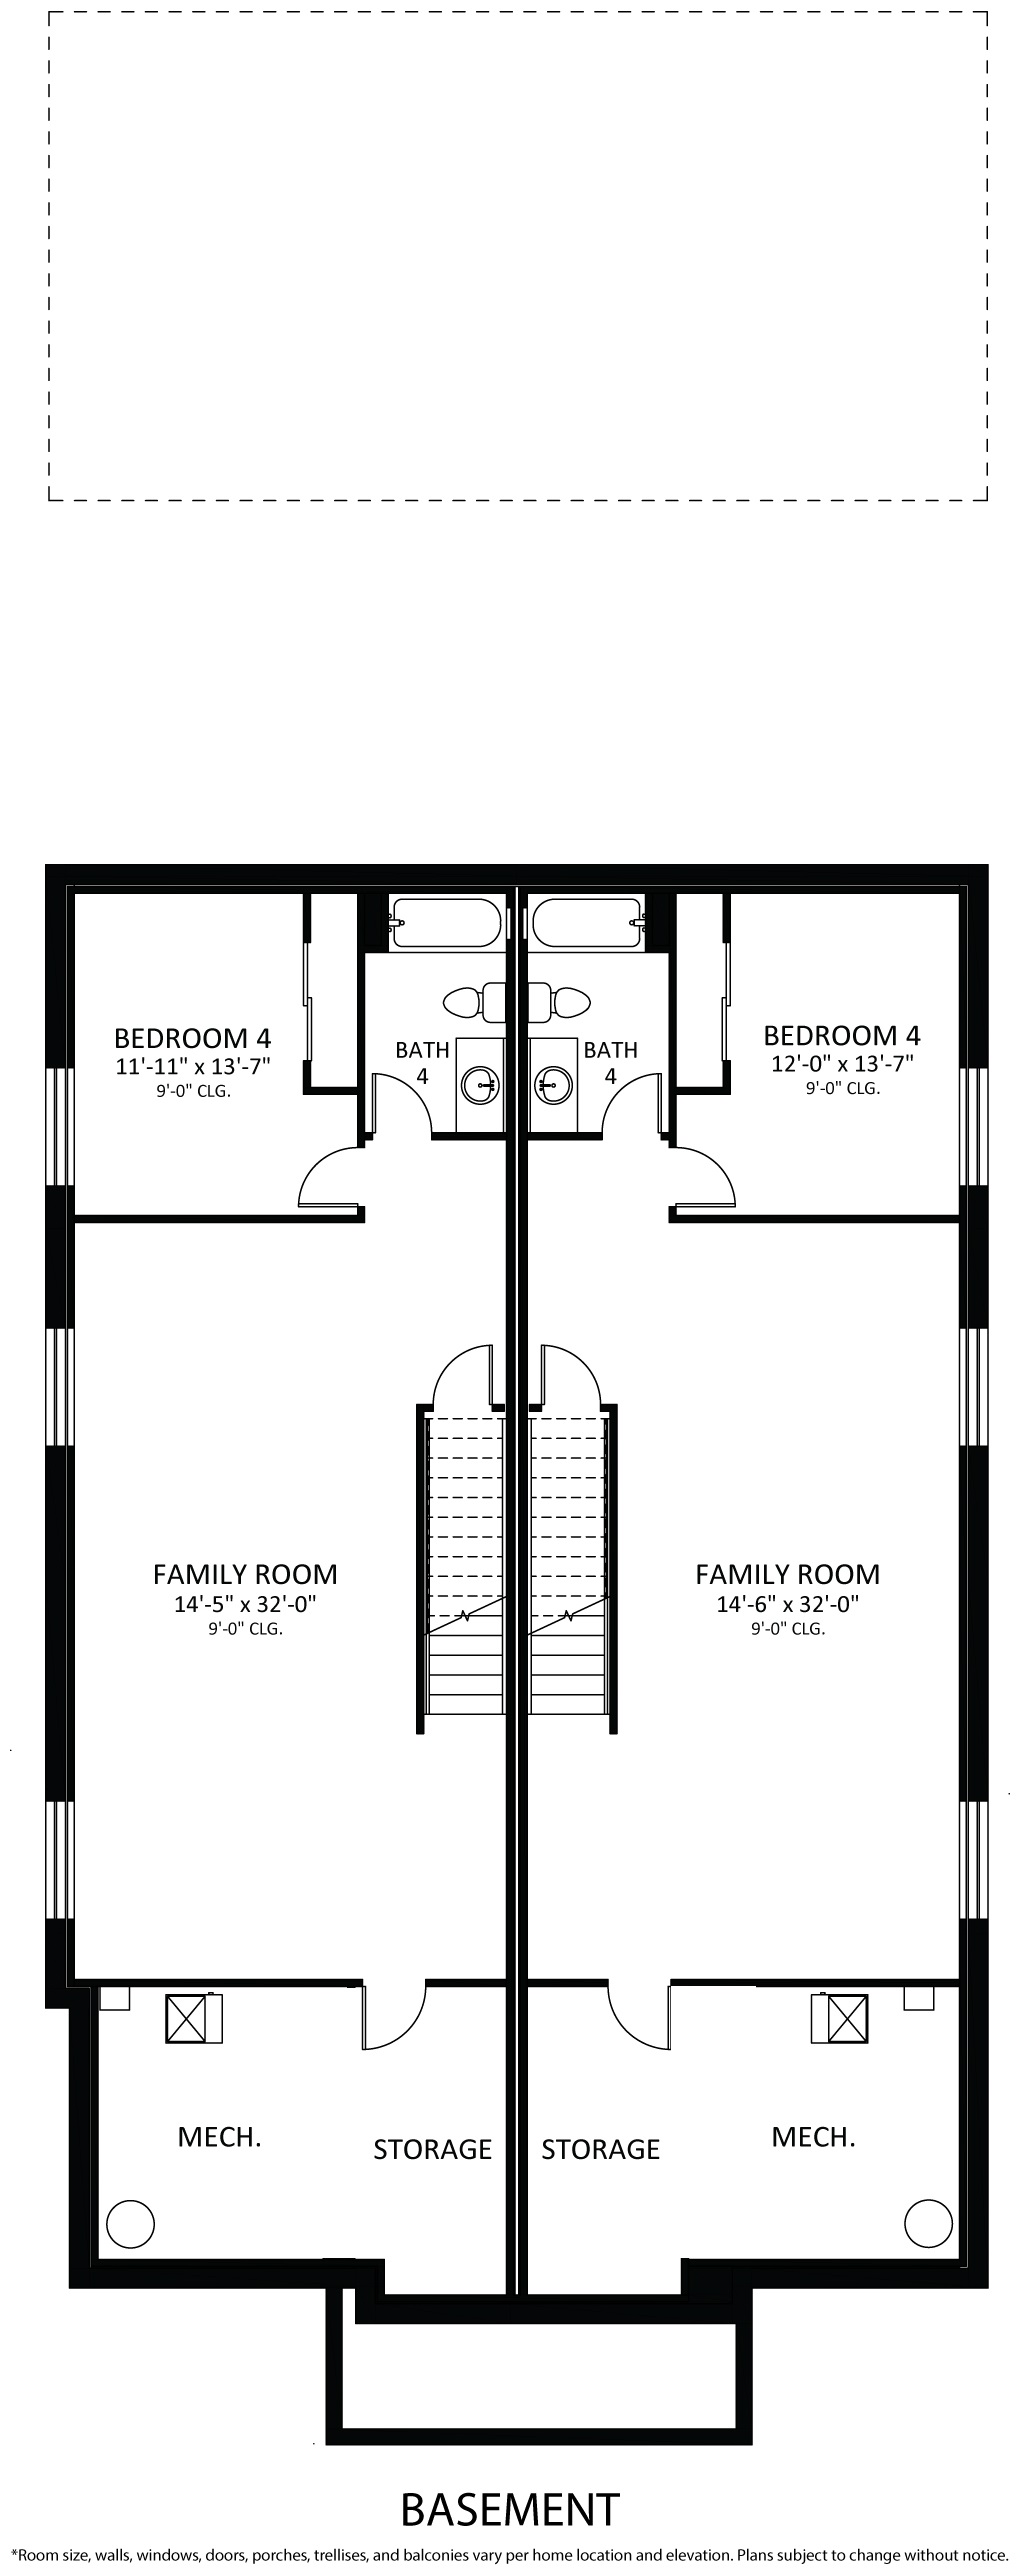 Floorplan 04. Oxford 4.jpg for 588 N. Adams Street